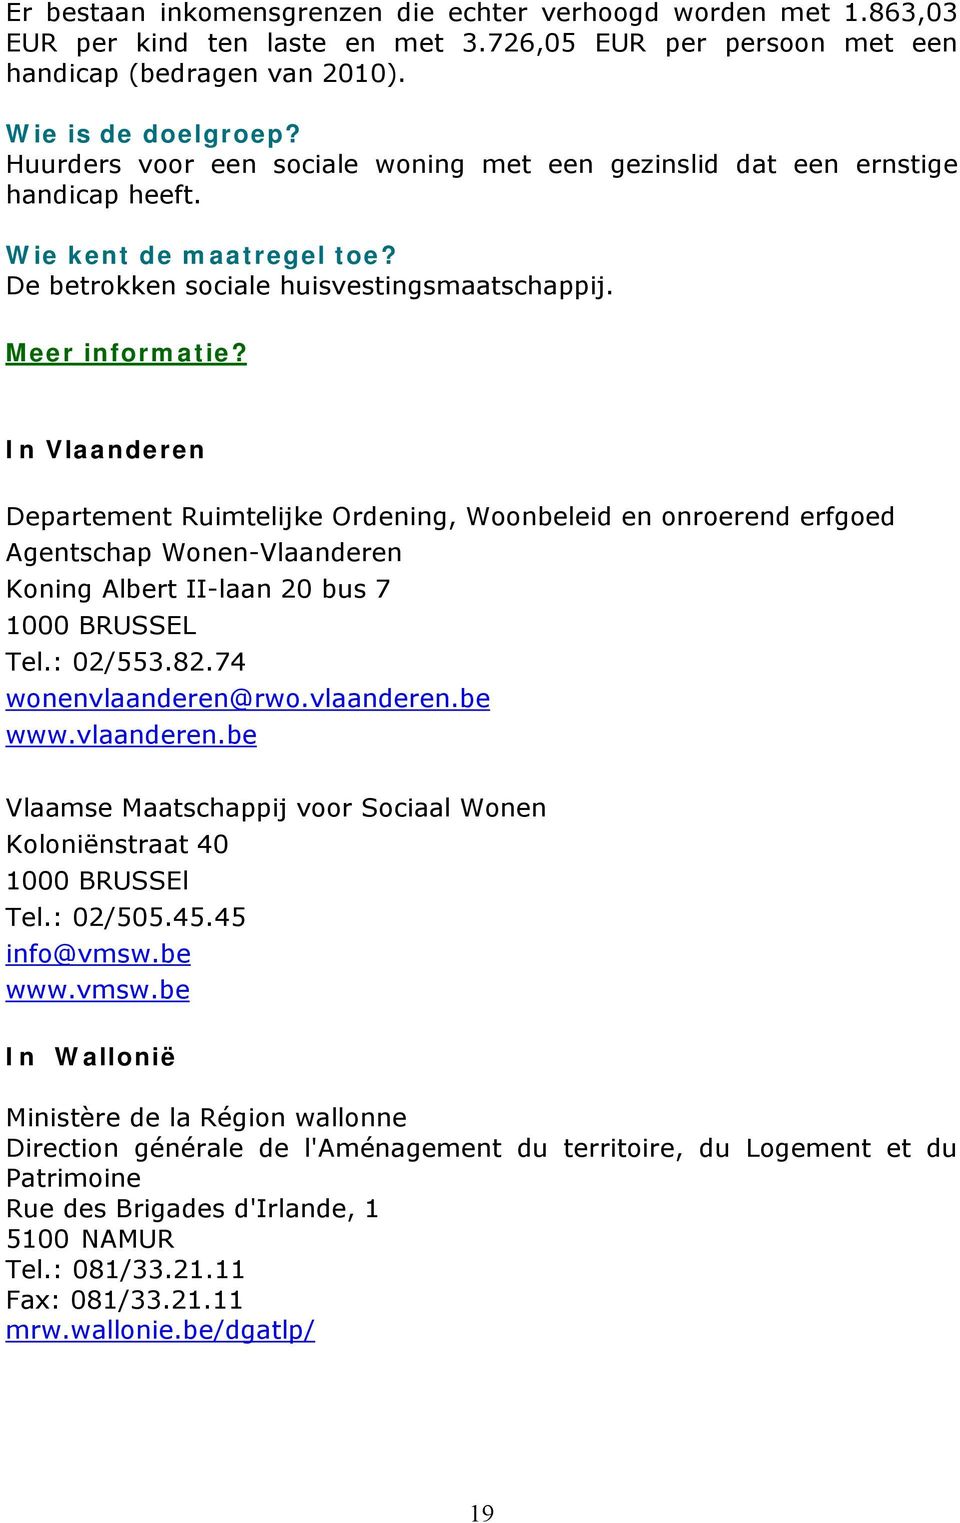 In Vlaanderen Departement Ruimtelijke Ordening, Woonbeleid en onroerend erfgoed Agentschap Wonen-Vlaanderen Koning Albert II-laan 20 bus 7 1000 BRUSSEL Tel.: 02/553.82.74 wonenvlaanderen@rwo.